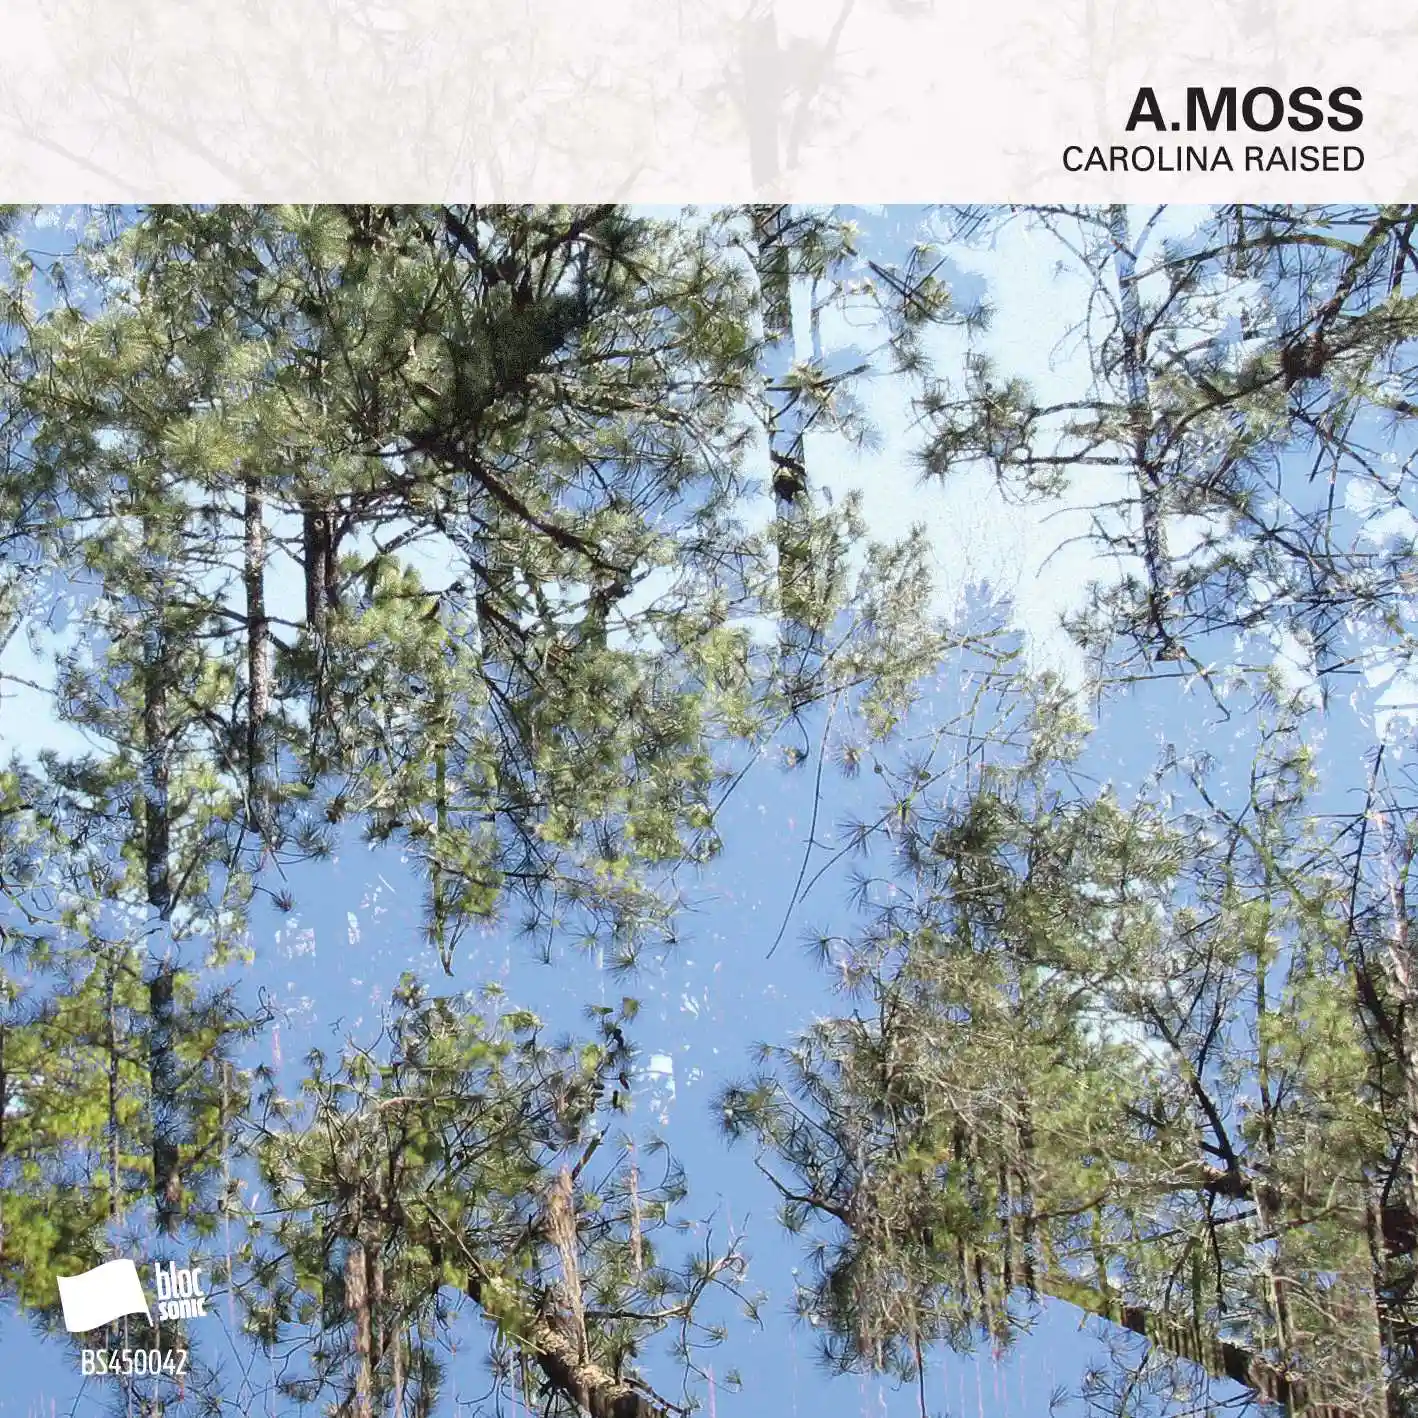 Album cover for “Carolina Raised” by A.Moss